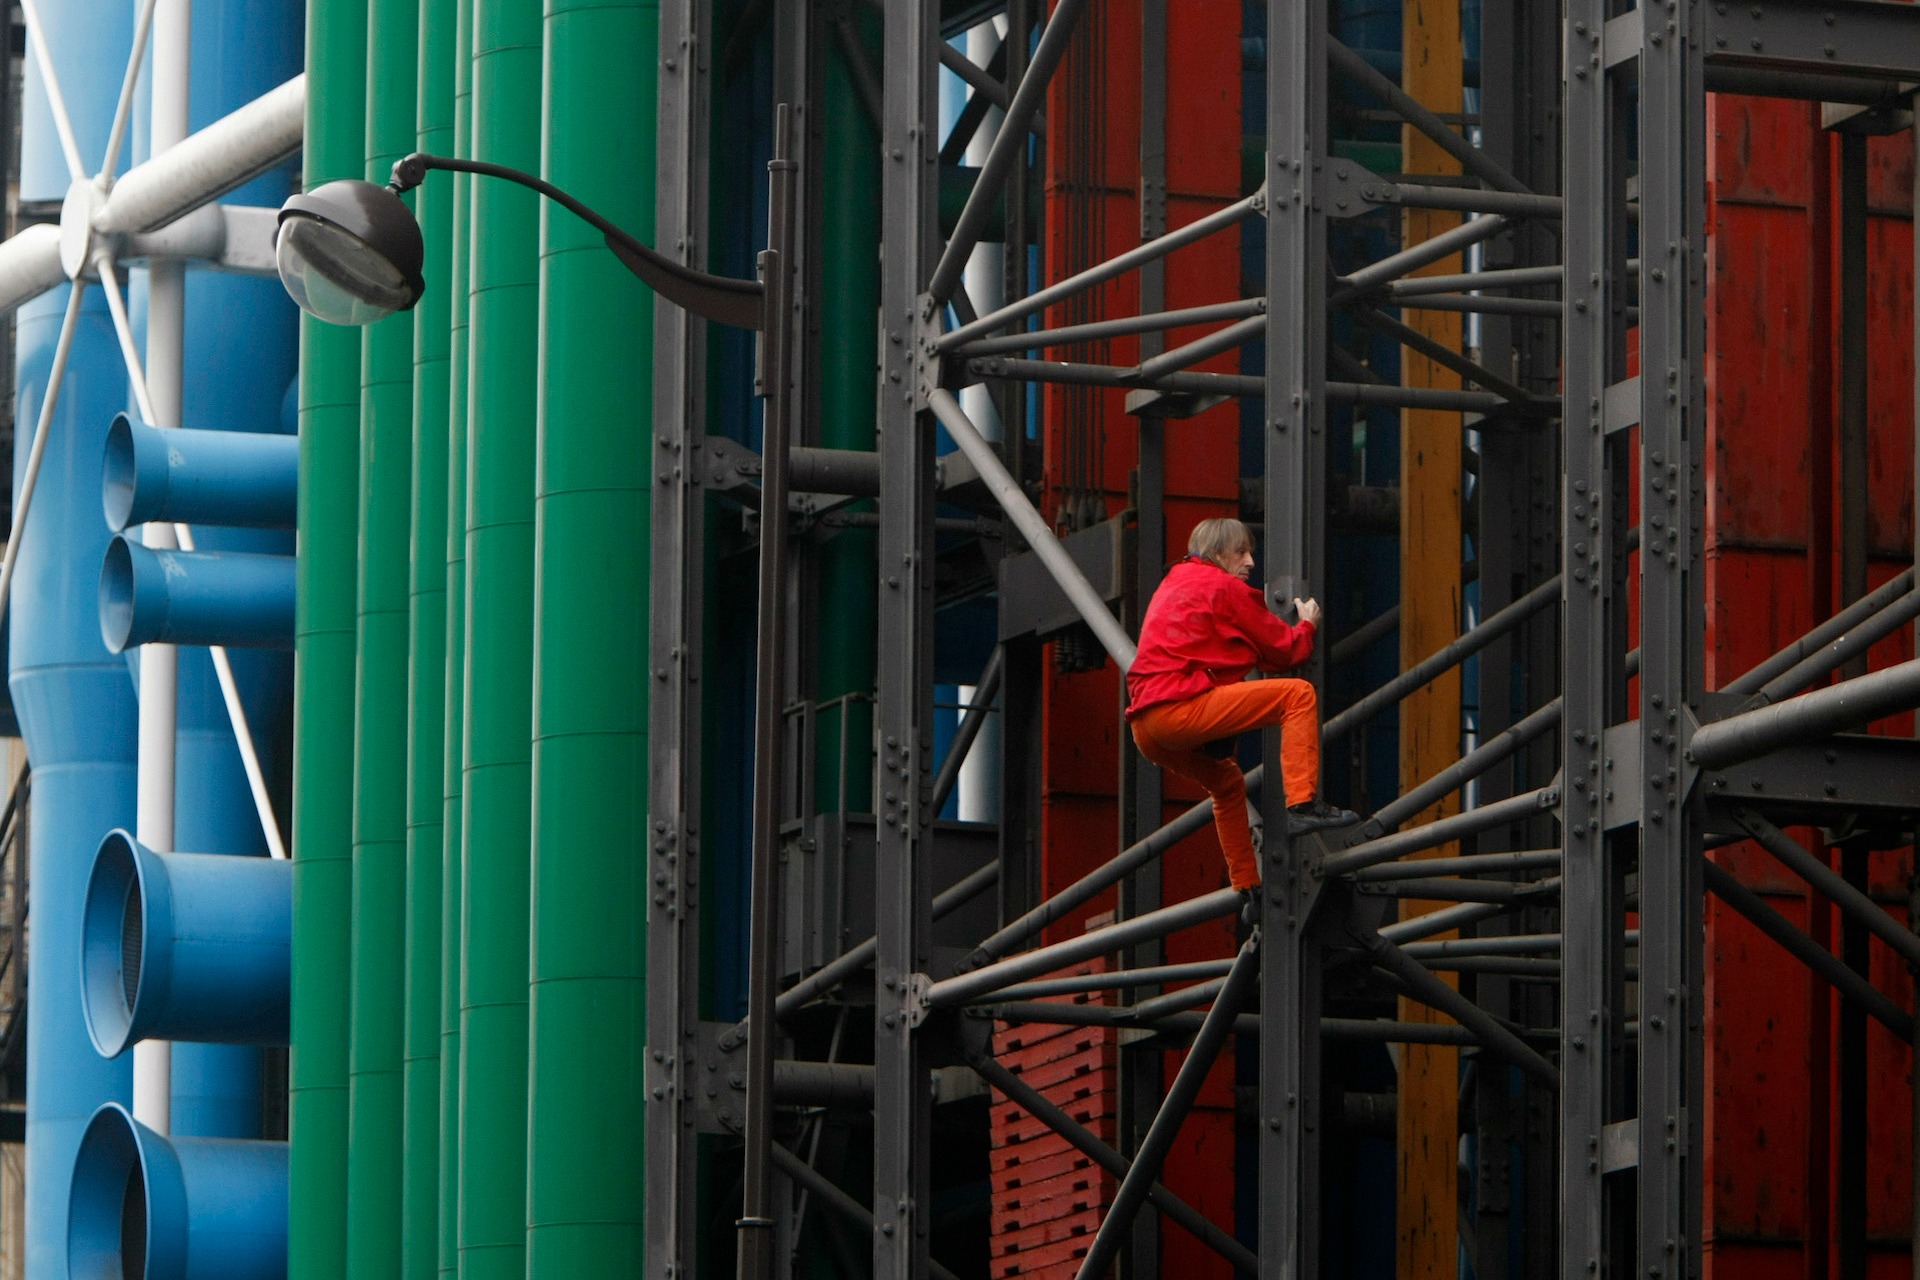 5 interesantes anécdotas sobre el Pompidou